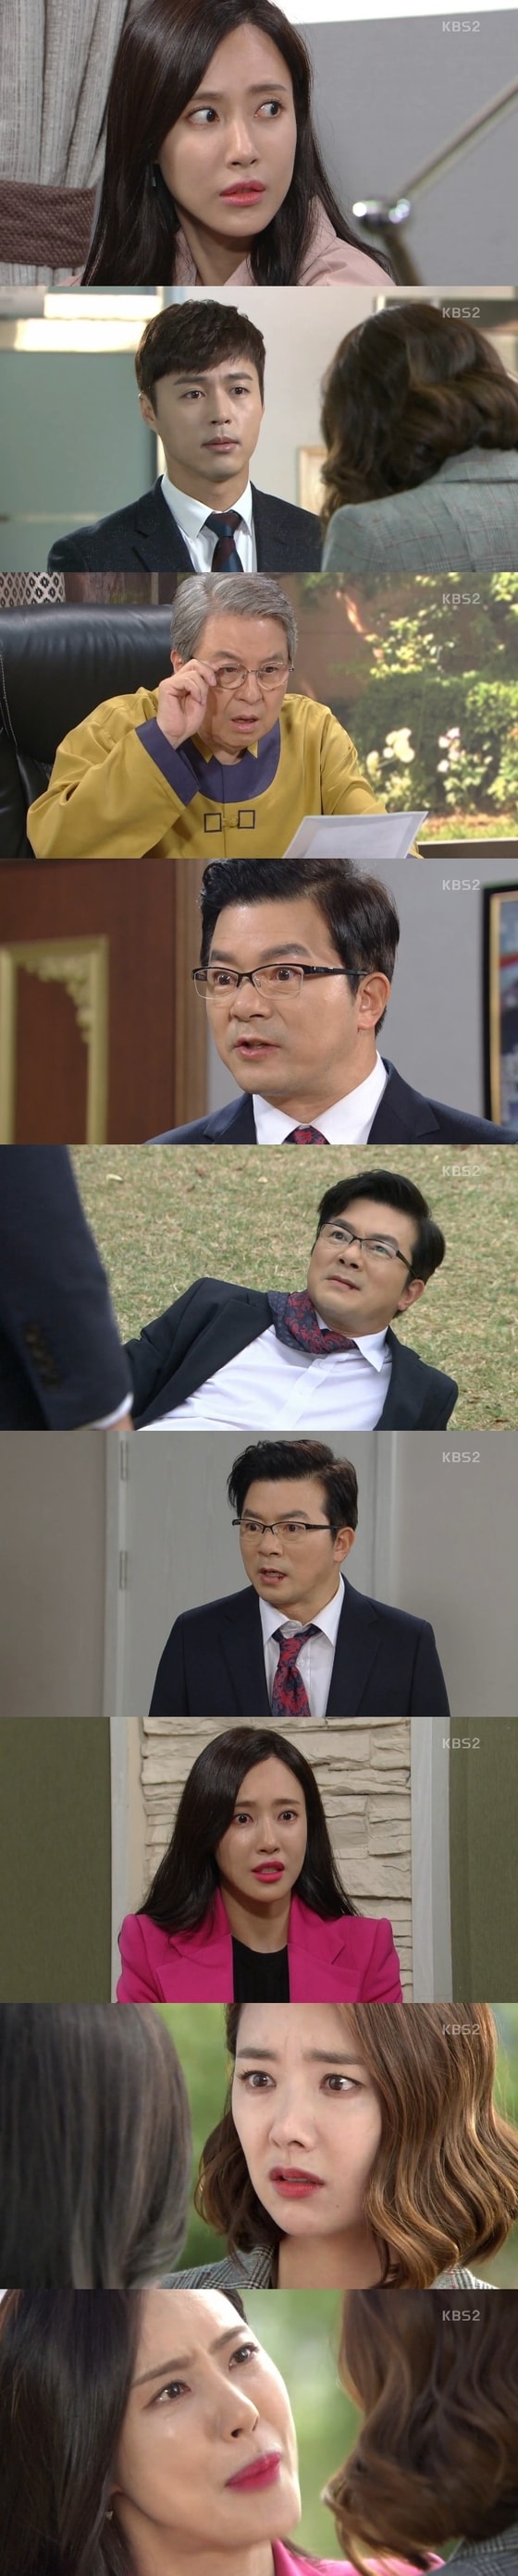 김윤서가 눈물을 보였다. © News1star / KBS2 '여자의 비밀' 캡처